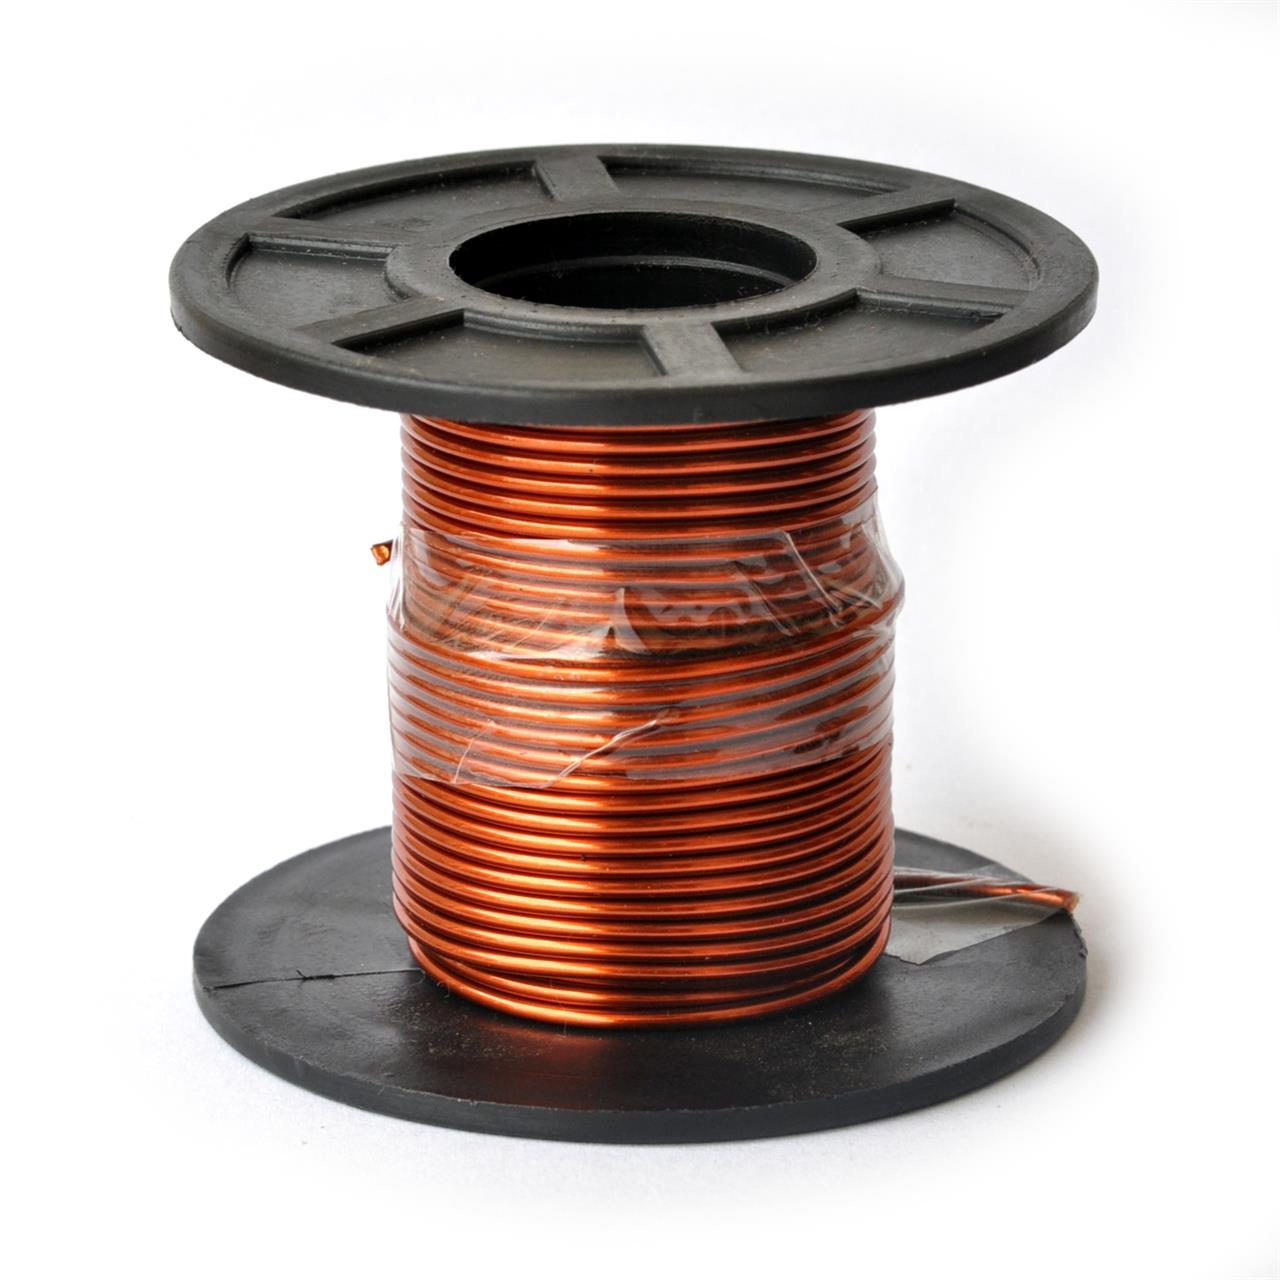 Fios de cobre esmaltados para bobinas, transformadores e indutores - Fio 15 AWG 100g